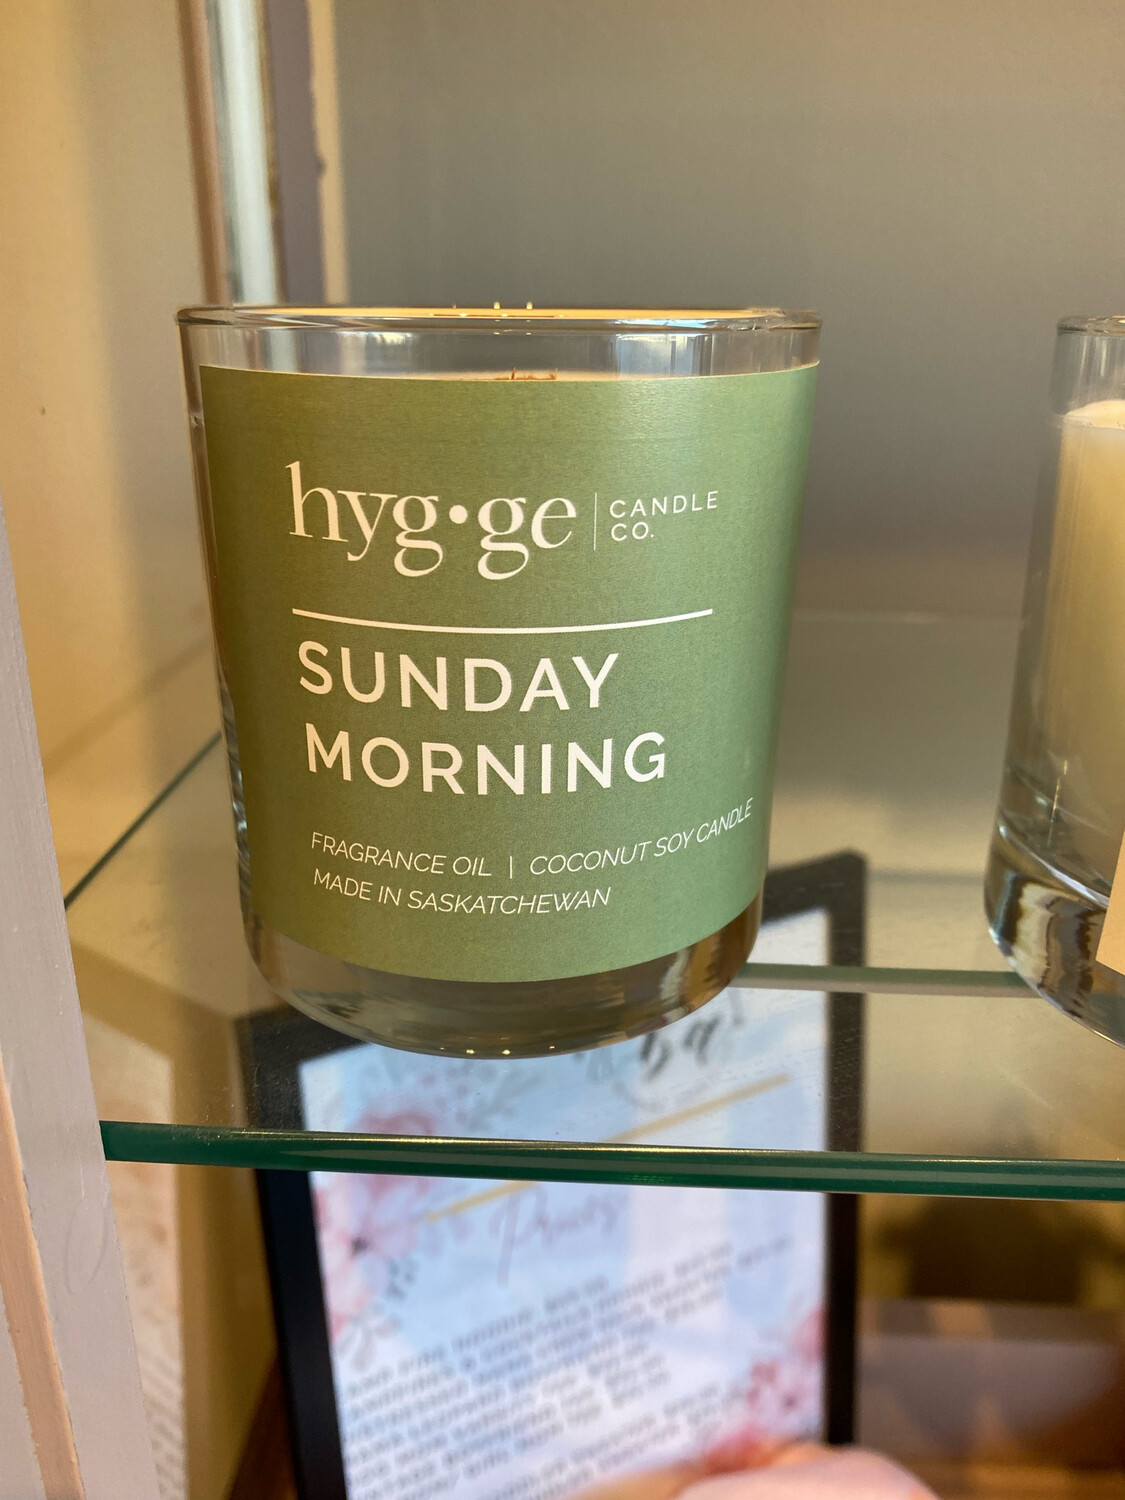 Sunday Morning Hygge Candle